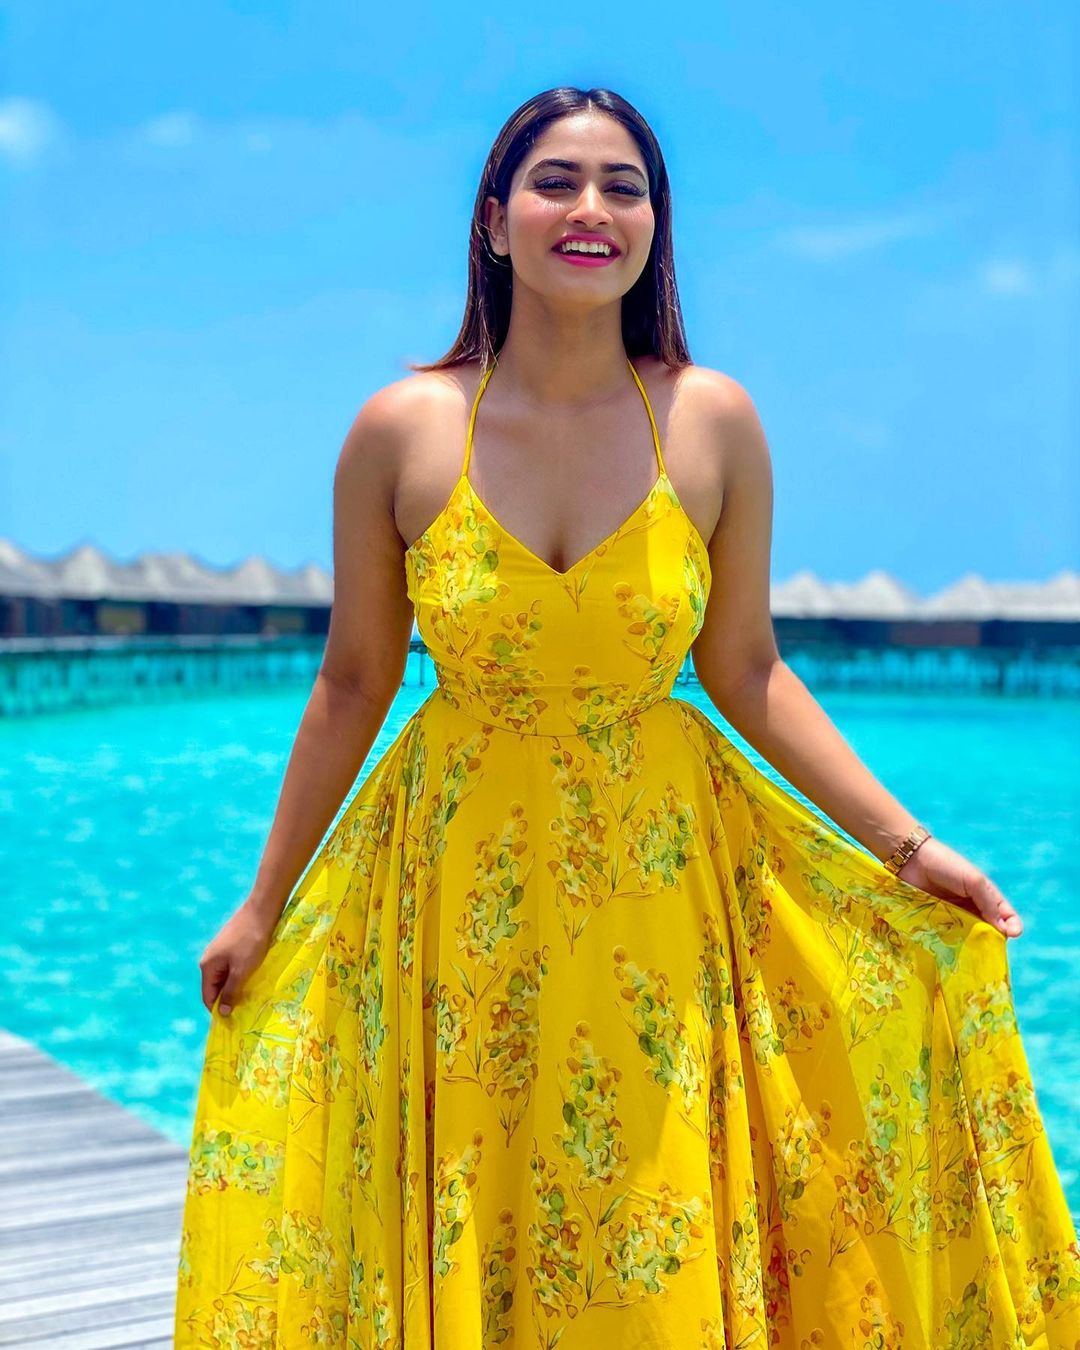 Actress Shivani Latest Hot Photos